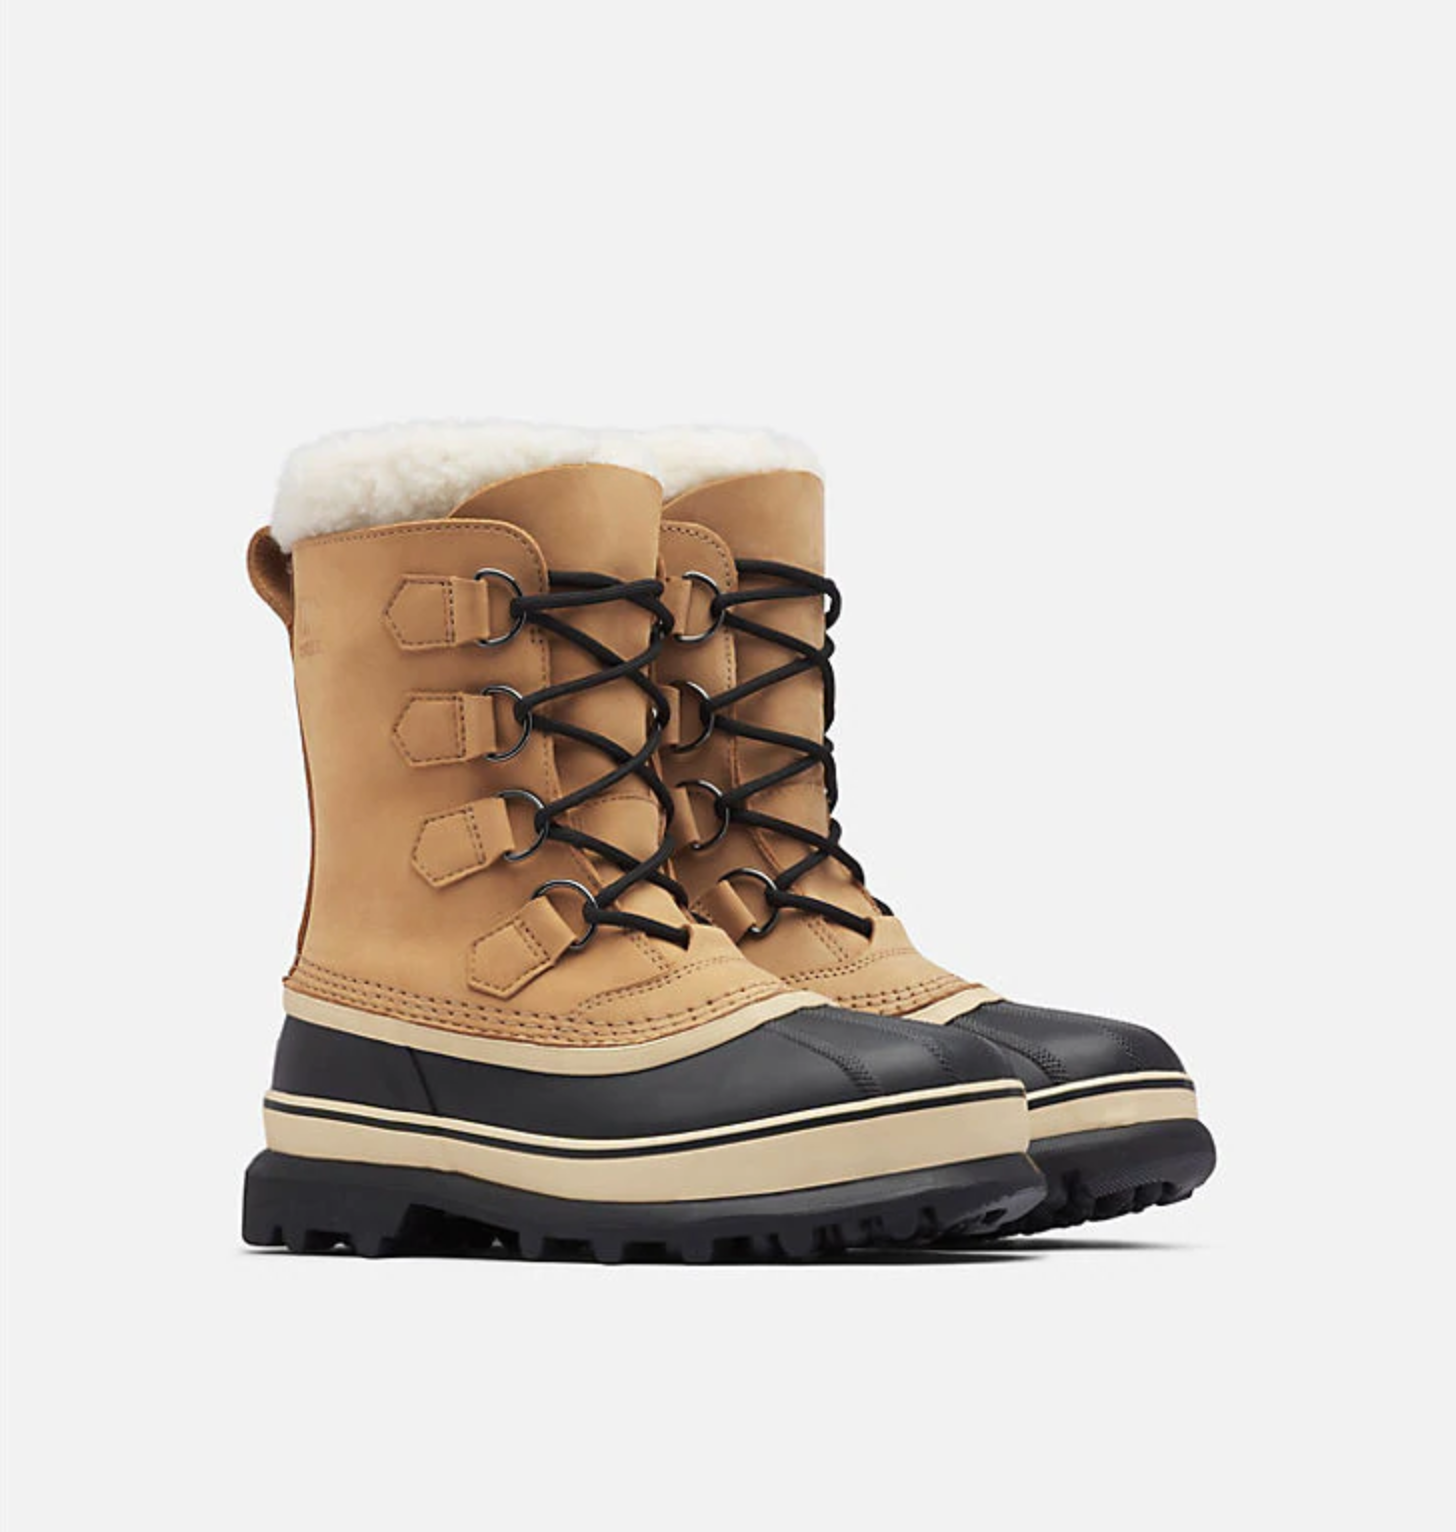 Best Weatherproof Snow Boots,